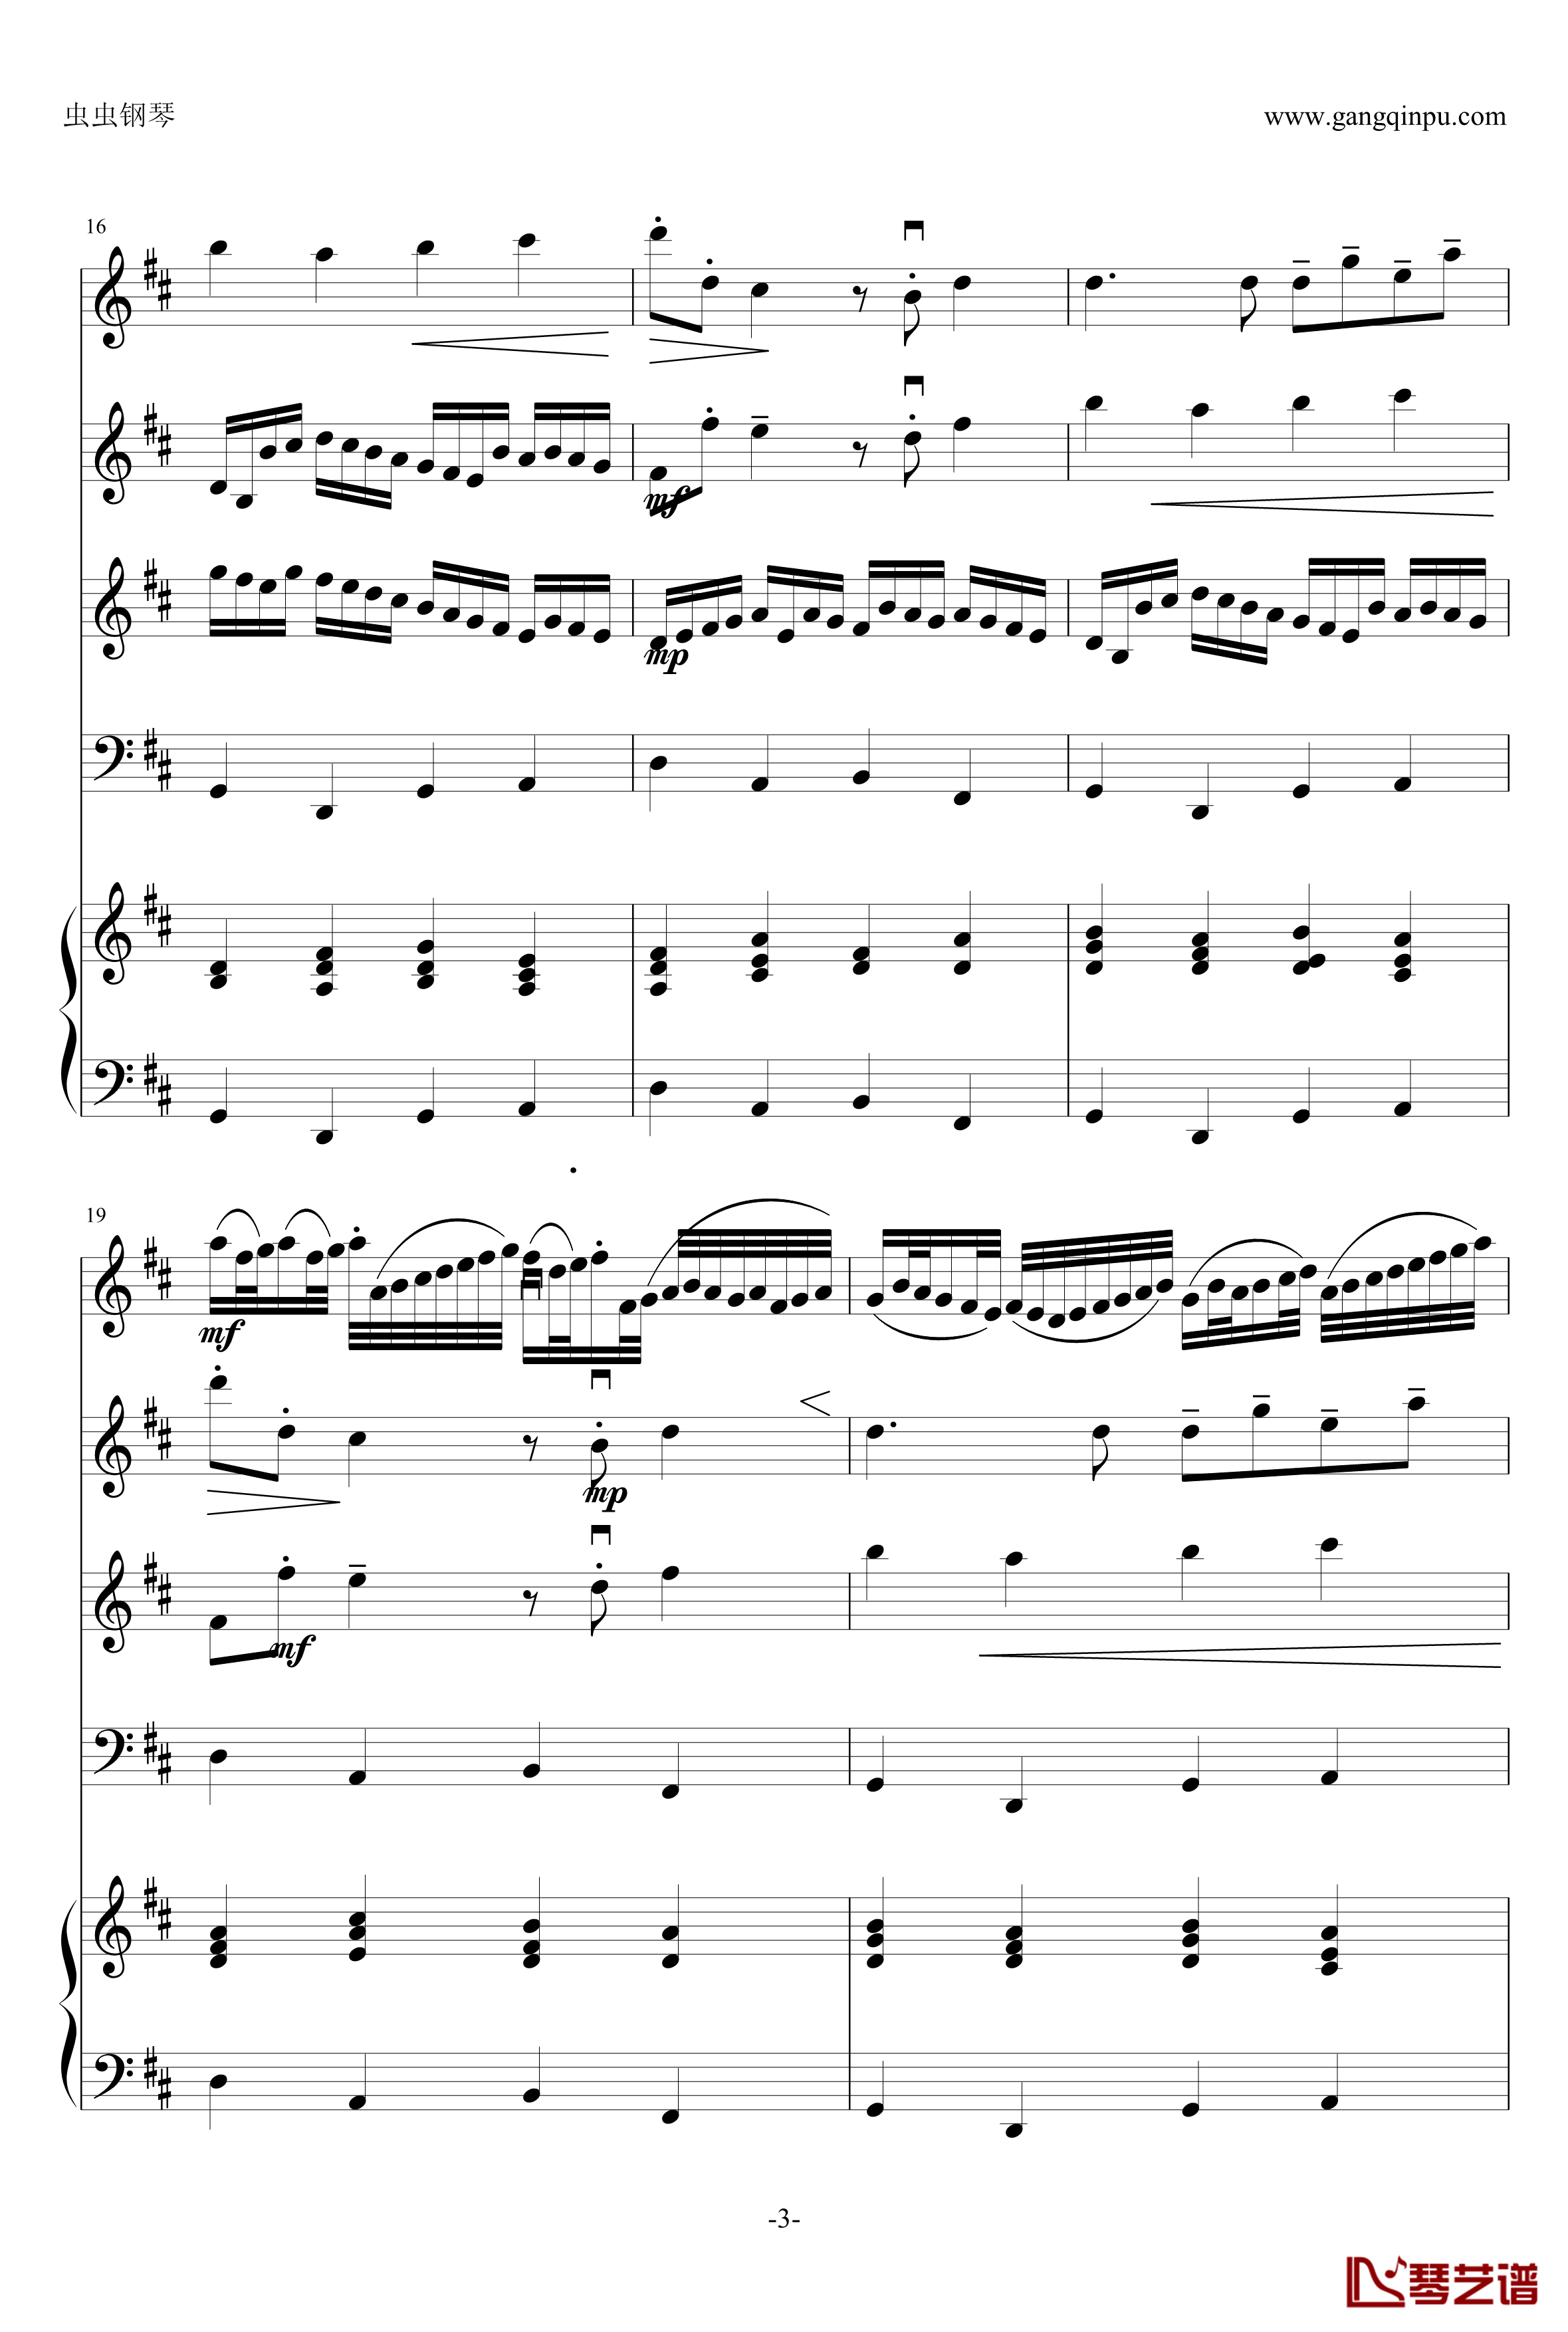 卡农钢琴谱-原版引进-帕赫贝尔-Pachelbel3